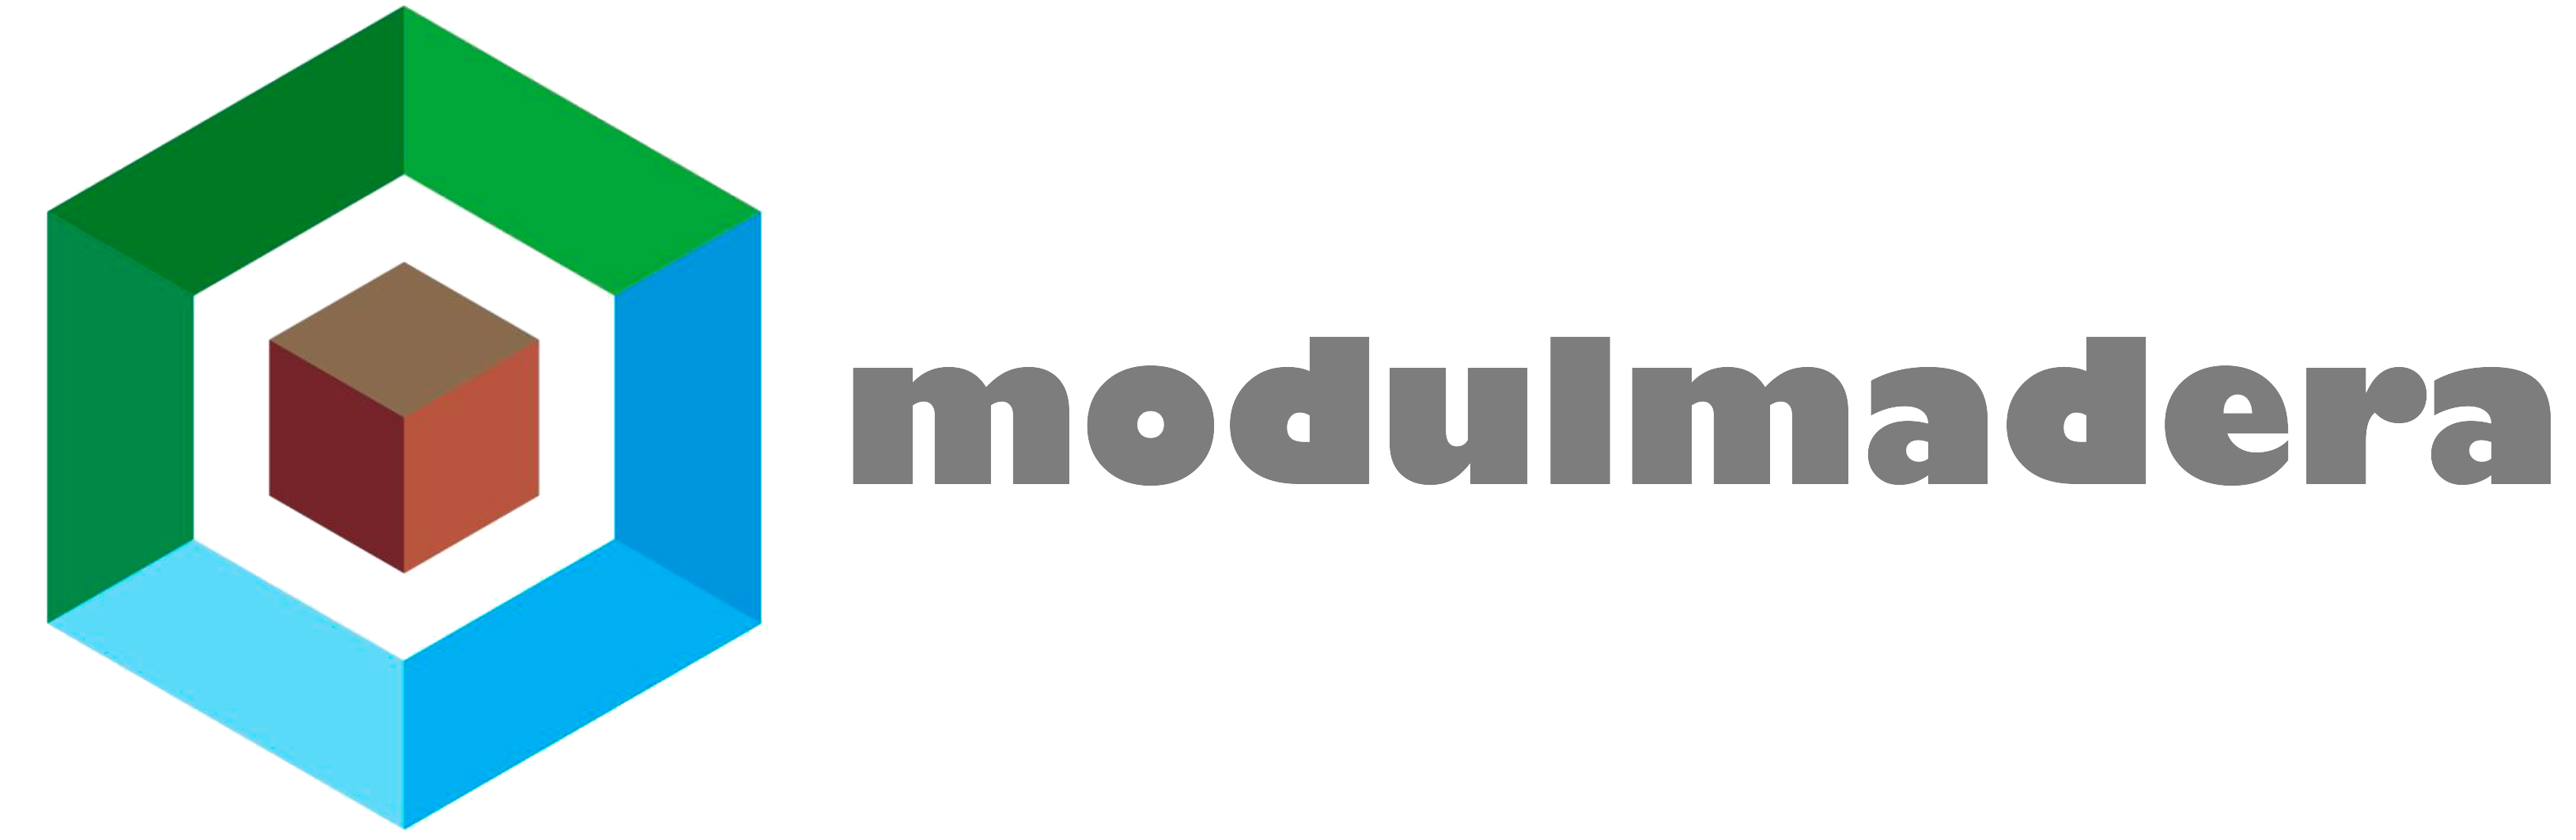 Logo-modulmadera-horizontal